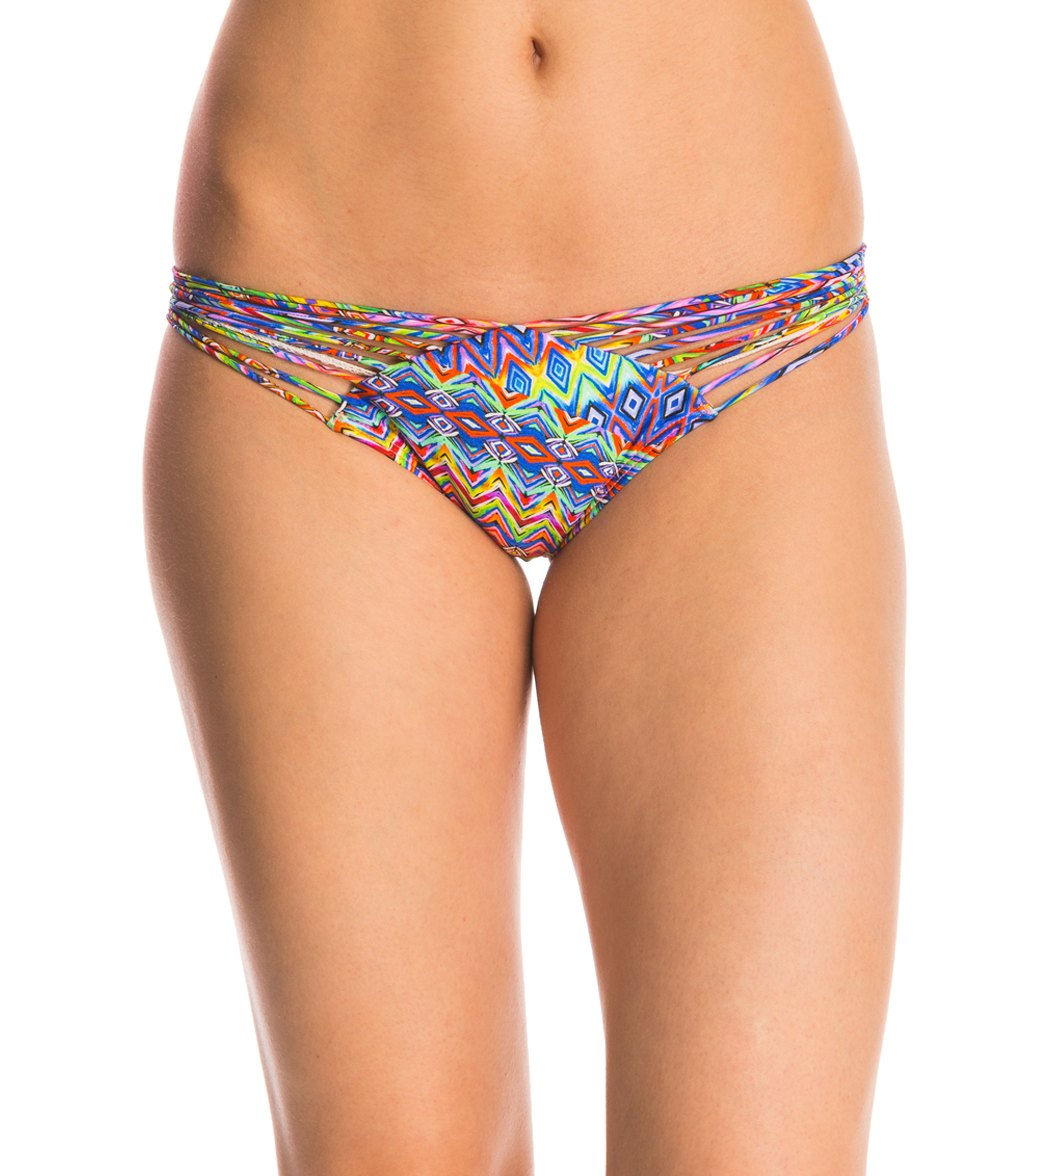 Luli Fama Swimwear Free Love Strappy Bikini Bottom - Multicolor X-Small - Swimoutlet.com